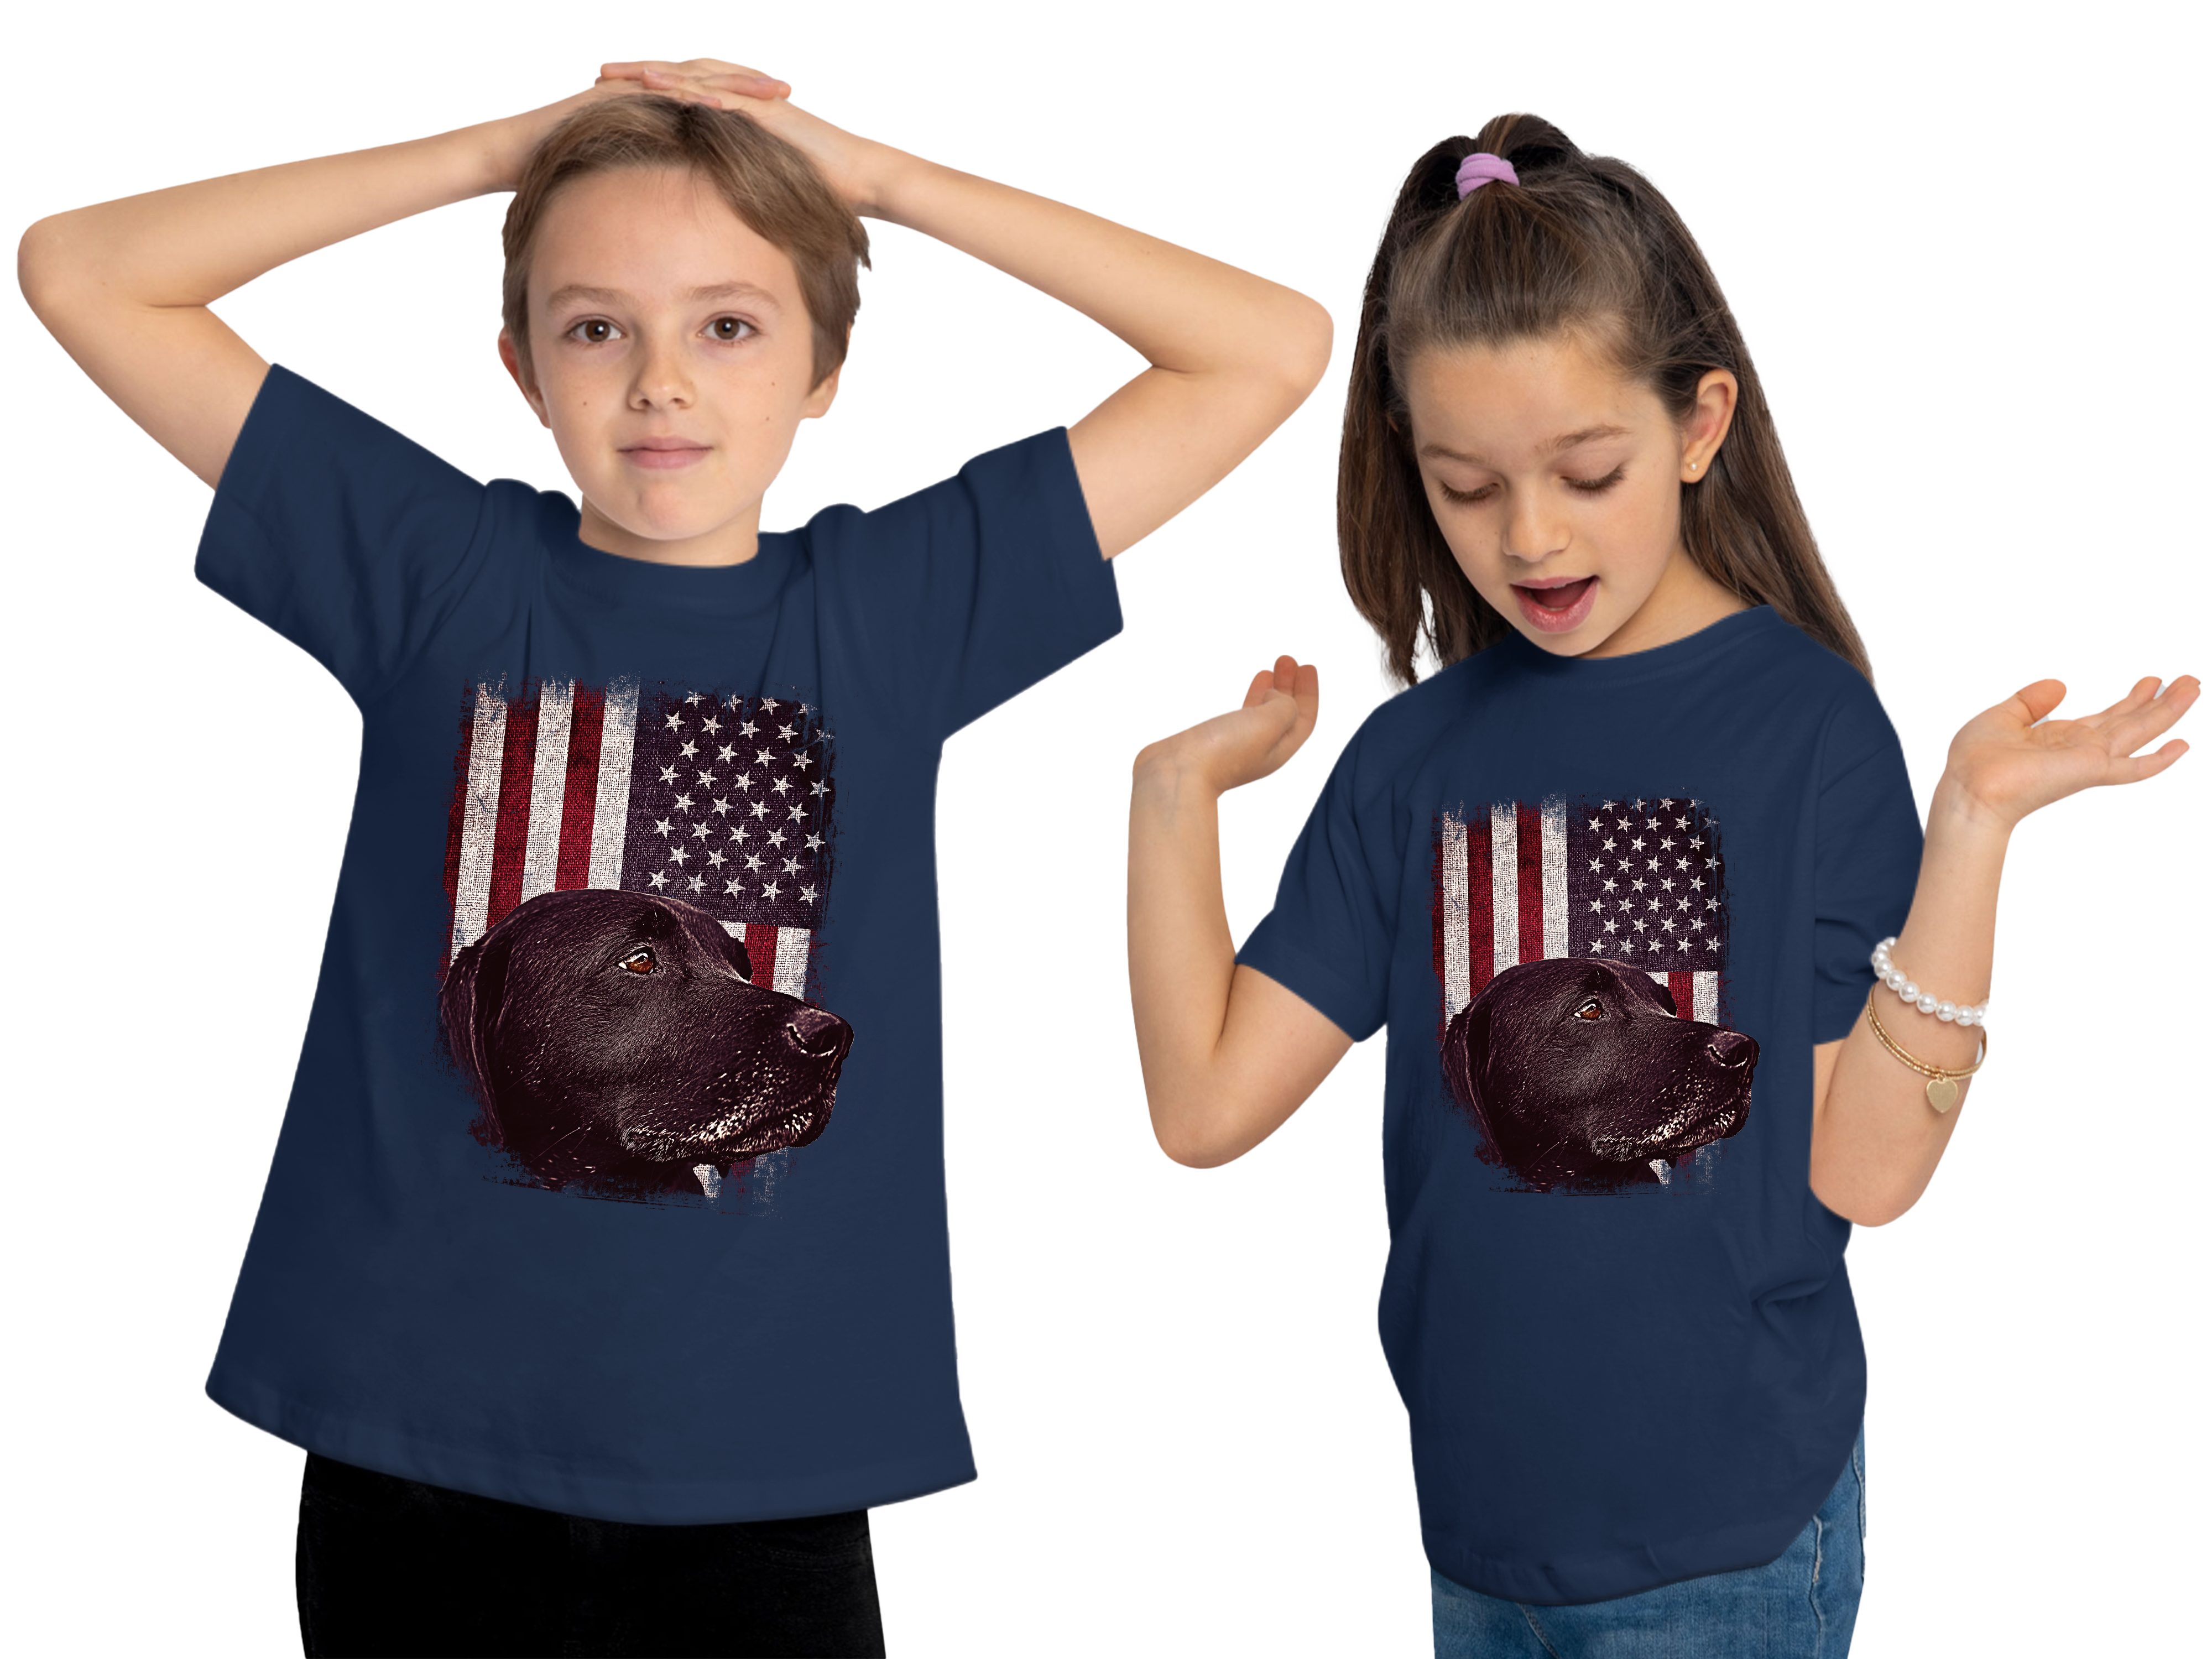 schwarzer Baumwollshirt - MyDesign24 Aufdruck, blau Shirt mit Hunde T-Shirt Print bedruckt vor Kinder navy Flagge i246 USA Labrador